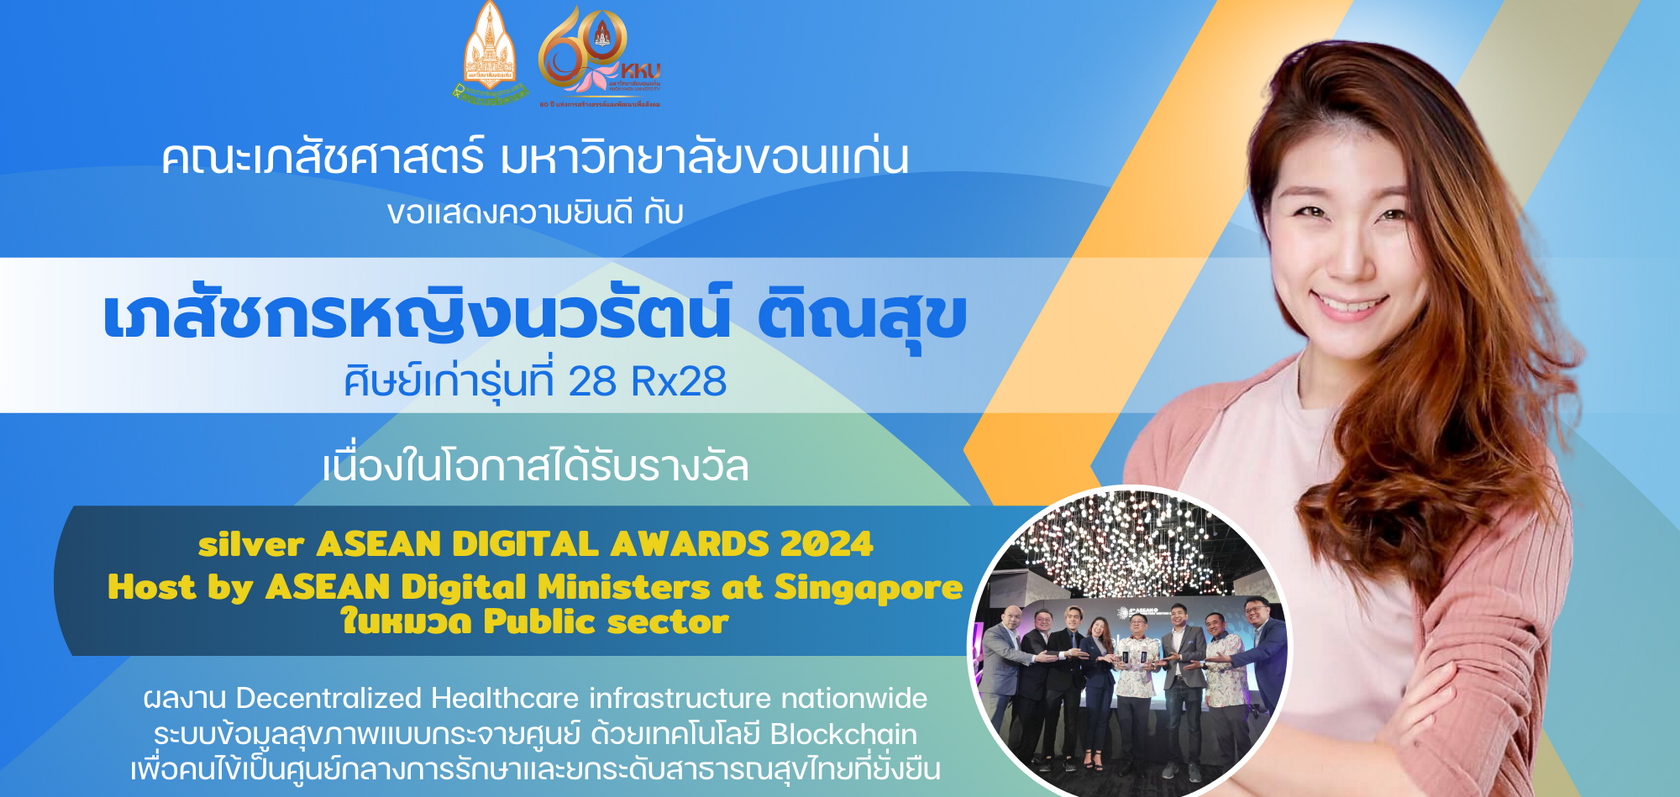 คณะเภสัช ม.ขอนแก่น ขอแสดงความยินดีกับ เภสัชกรหญิงนวรัตน์ ติณสุข ได้รางวัล รางวัล silver ASEAN DIGITAL AWARDS 2024